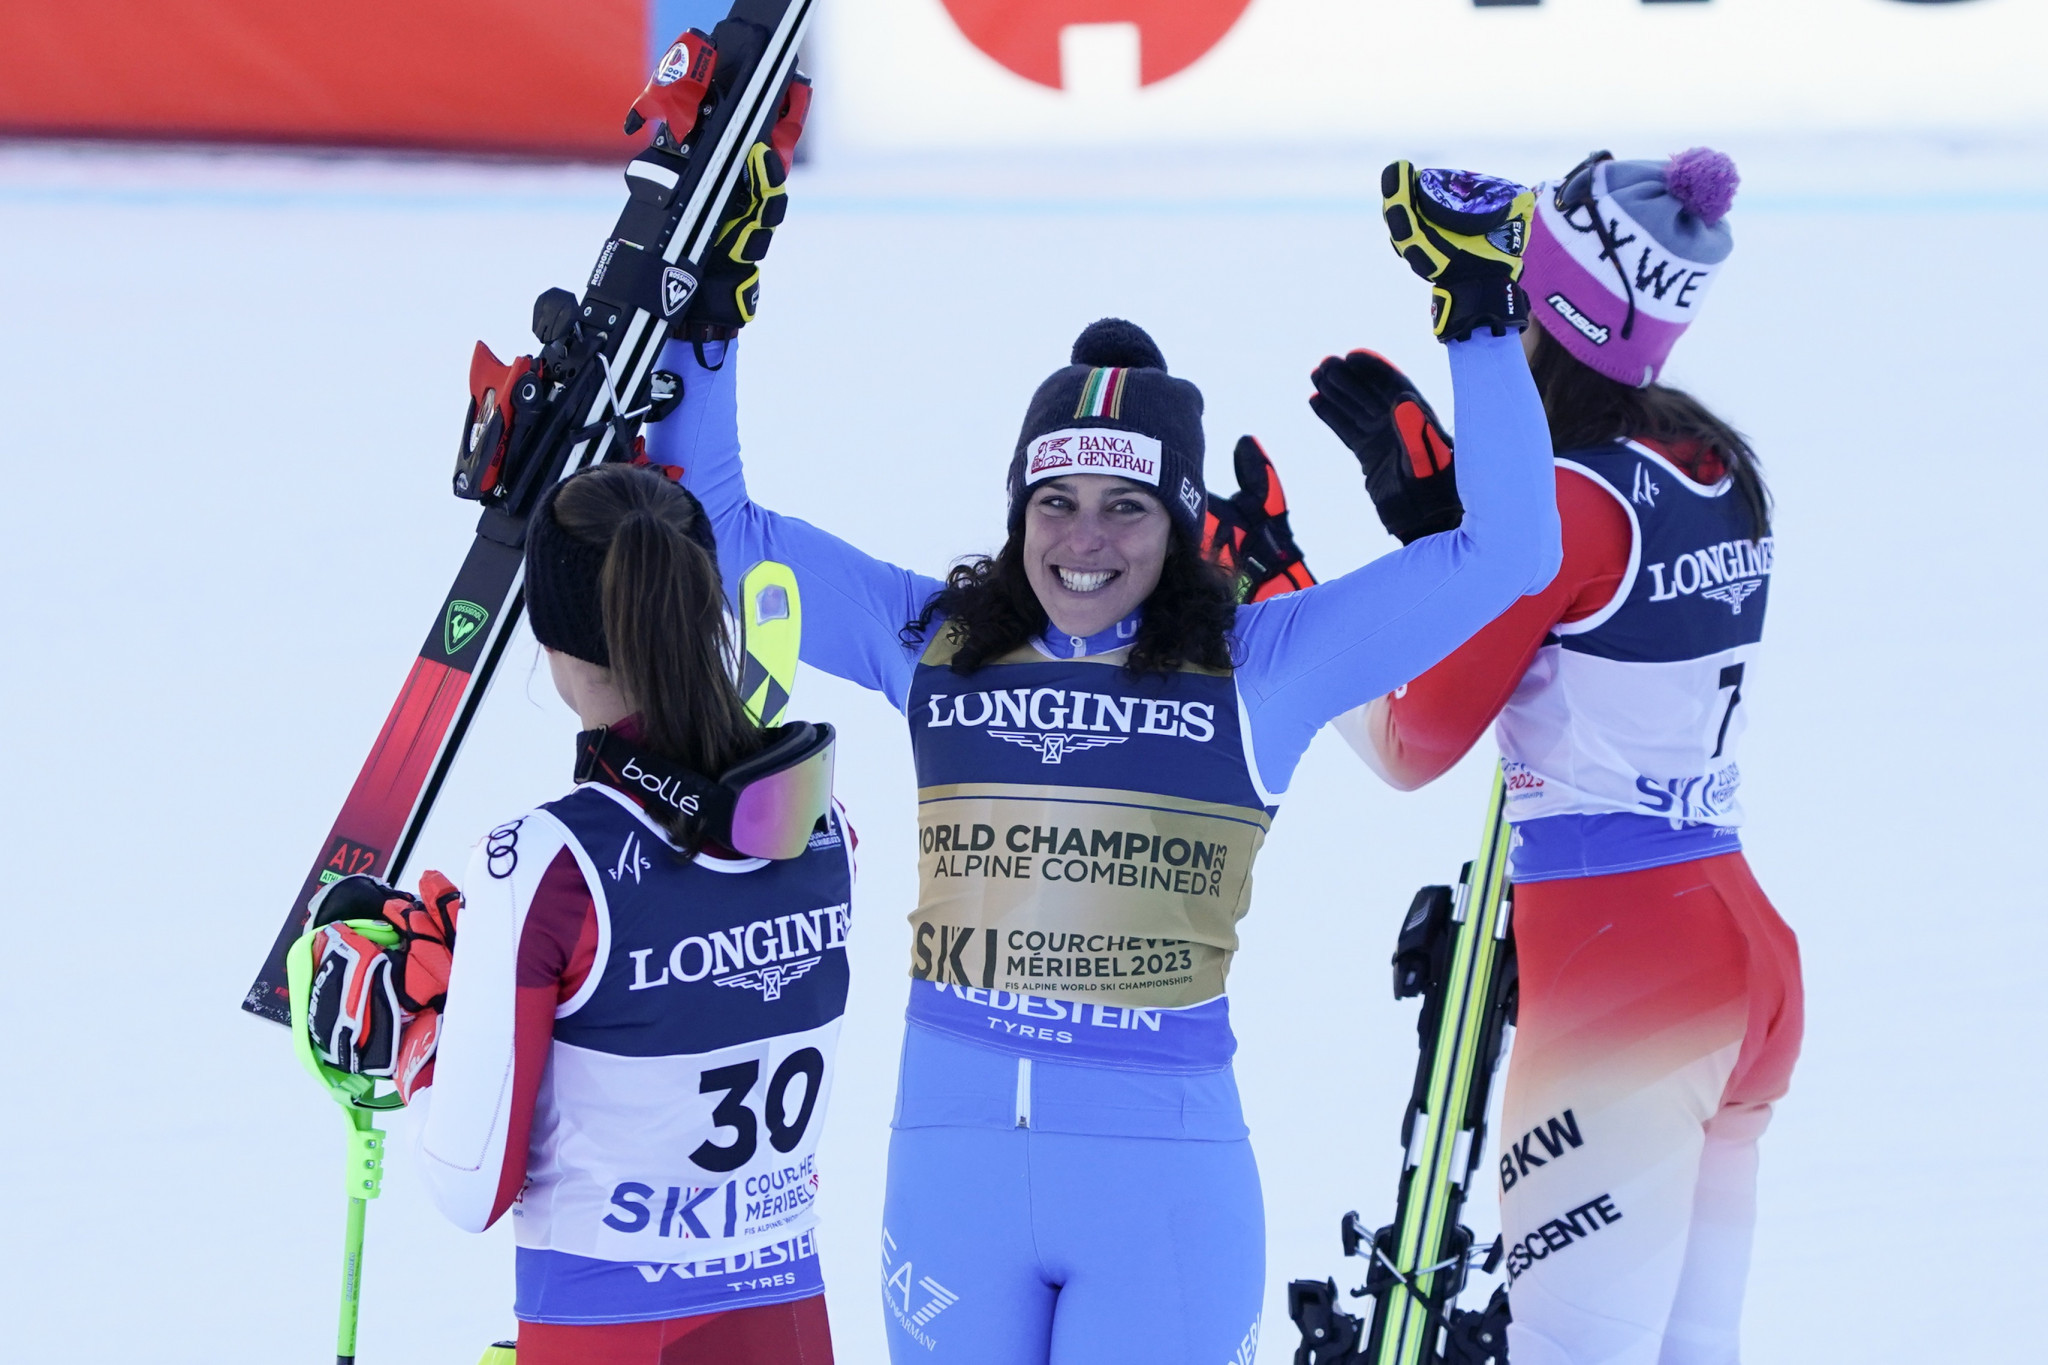 Brignone becomes Alpine combined world champion as Shiffrin makes late error